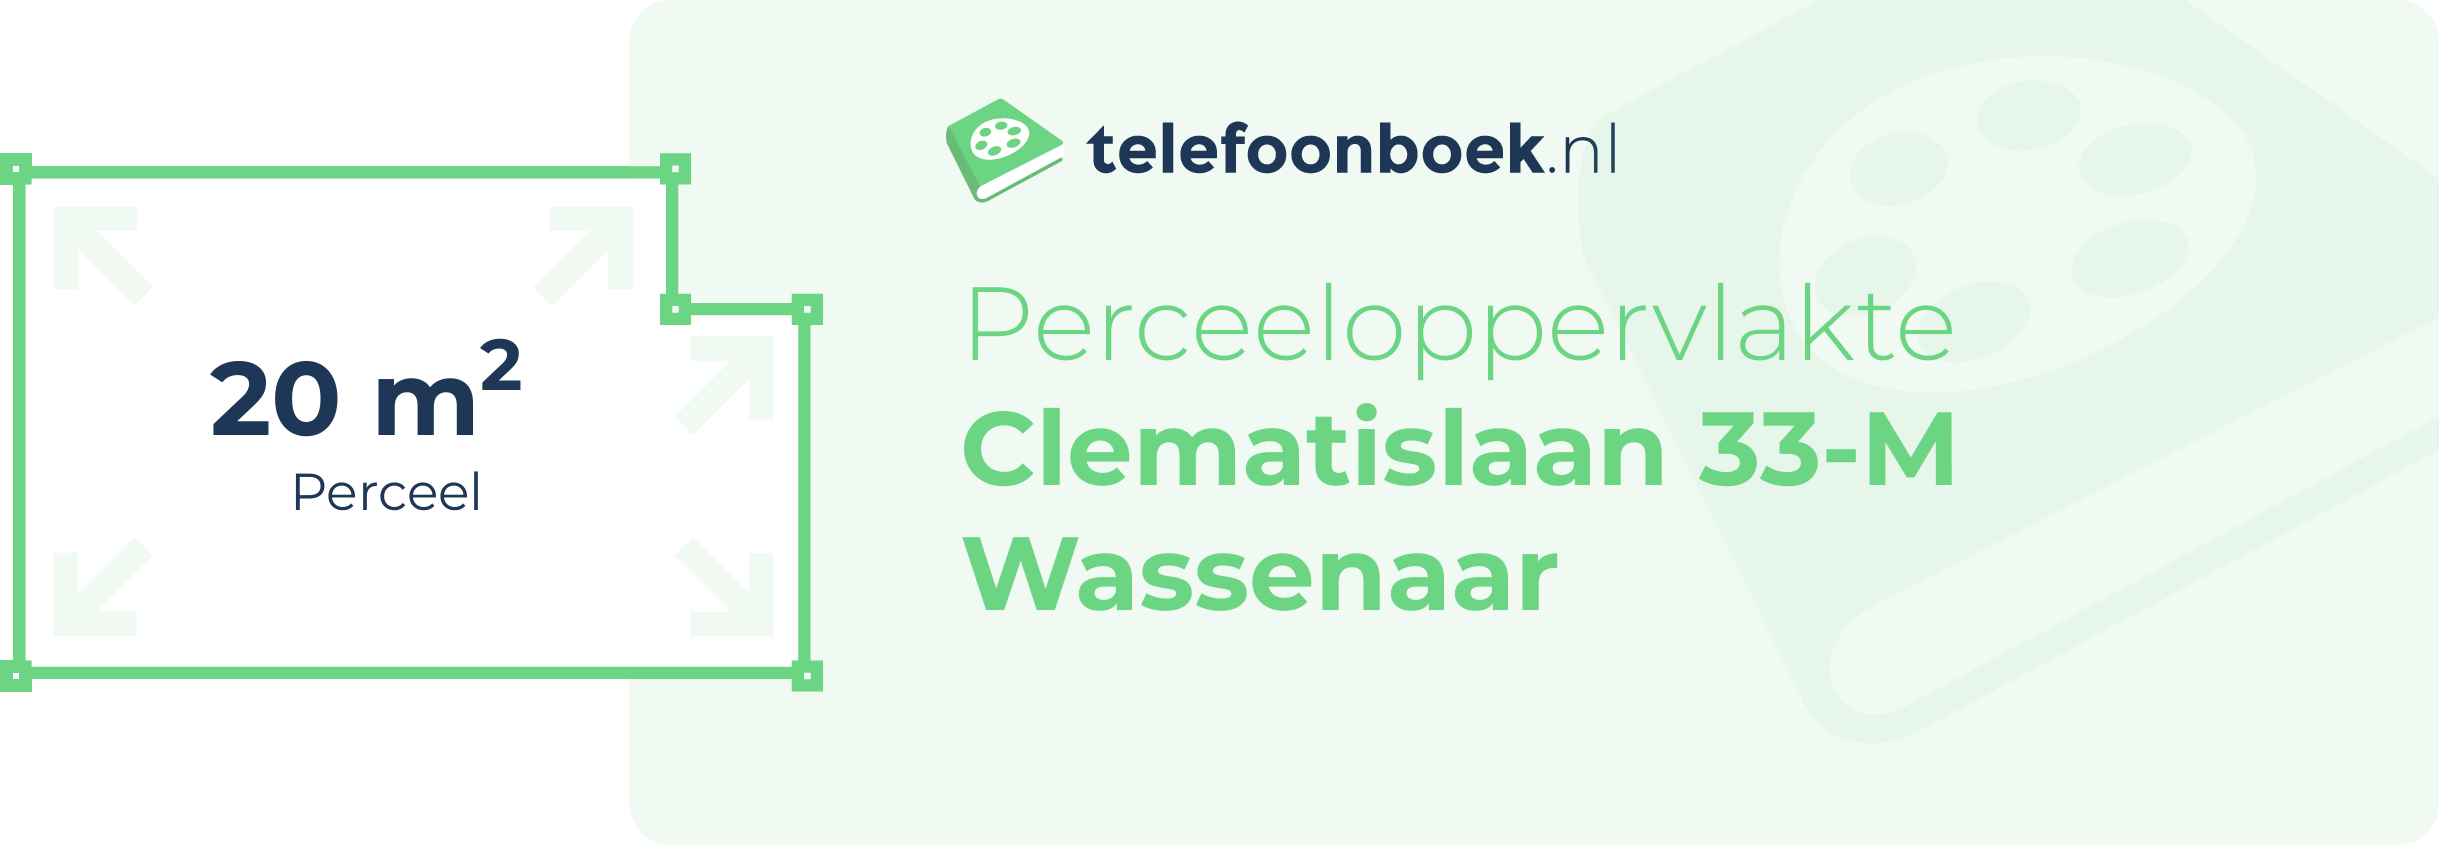 Perceeloppervlakte Clematislaan 33-M Wassenaar